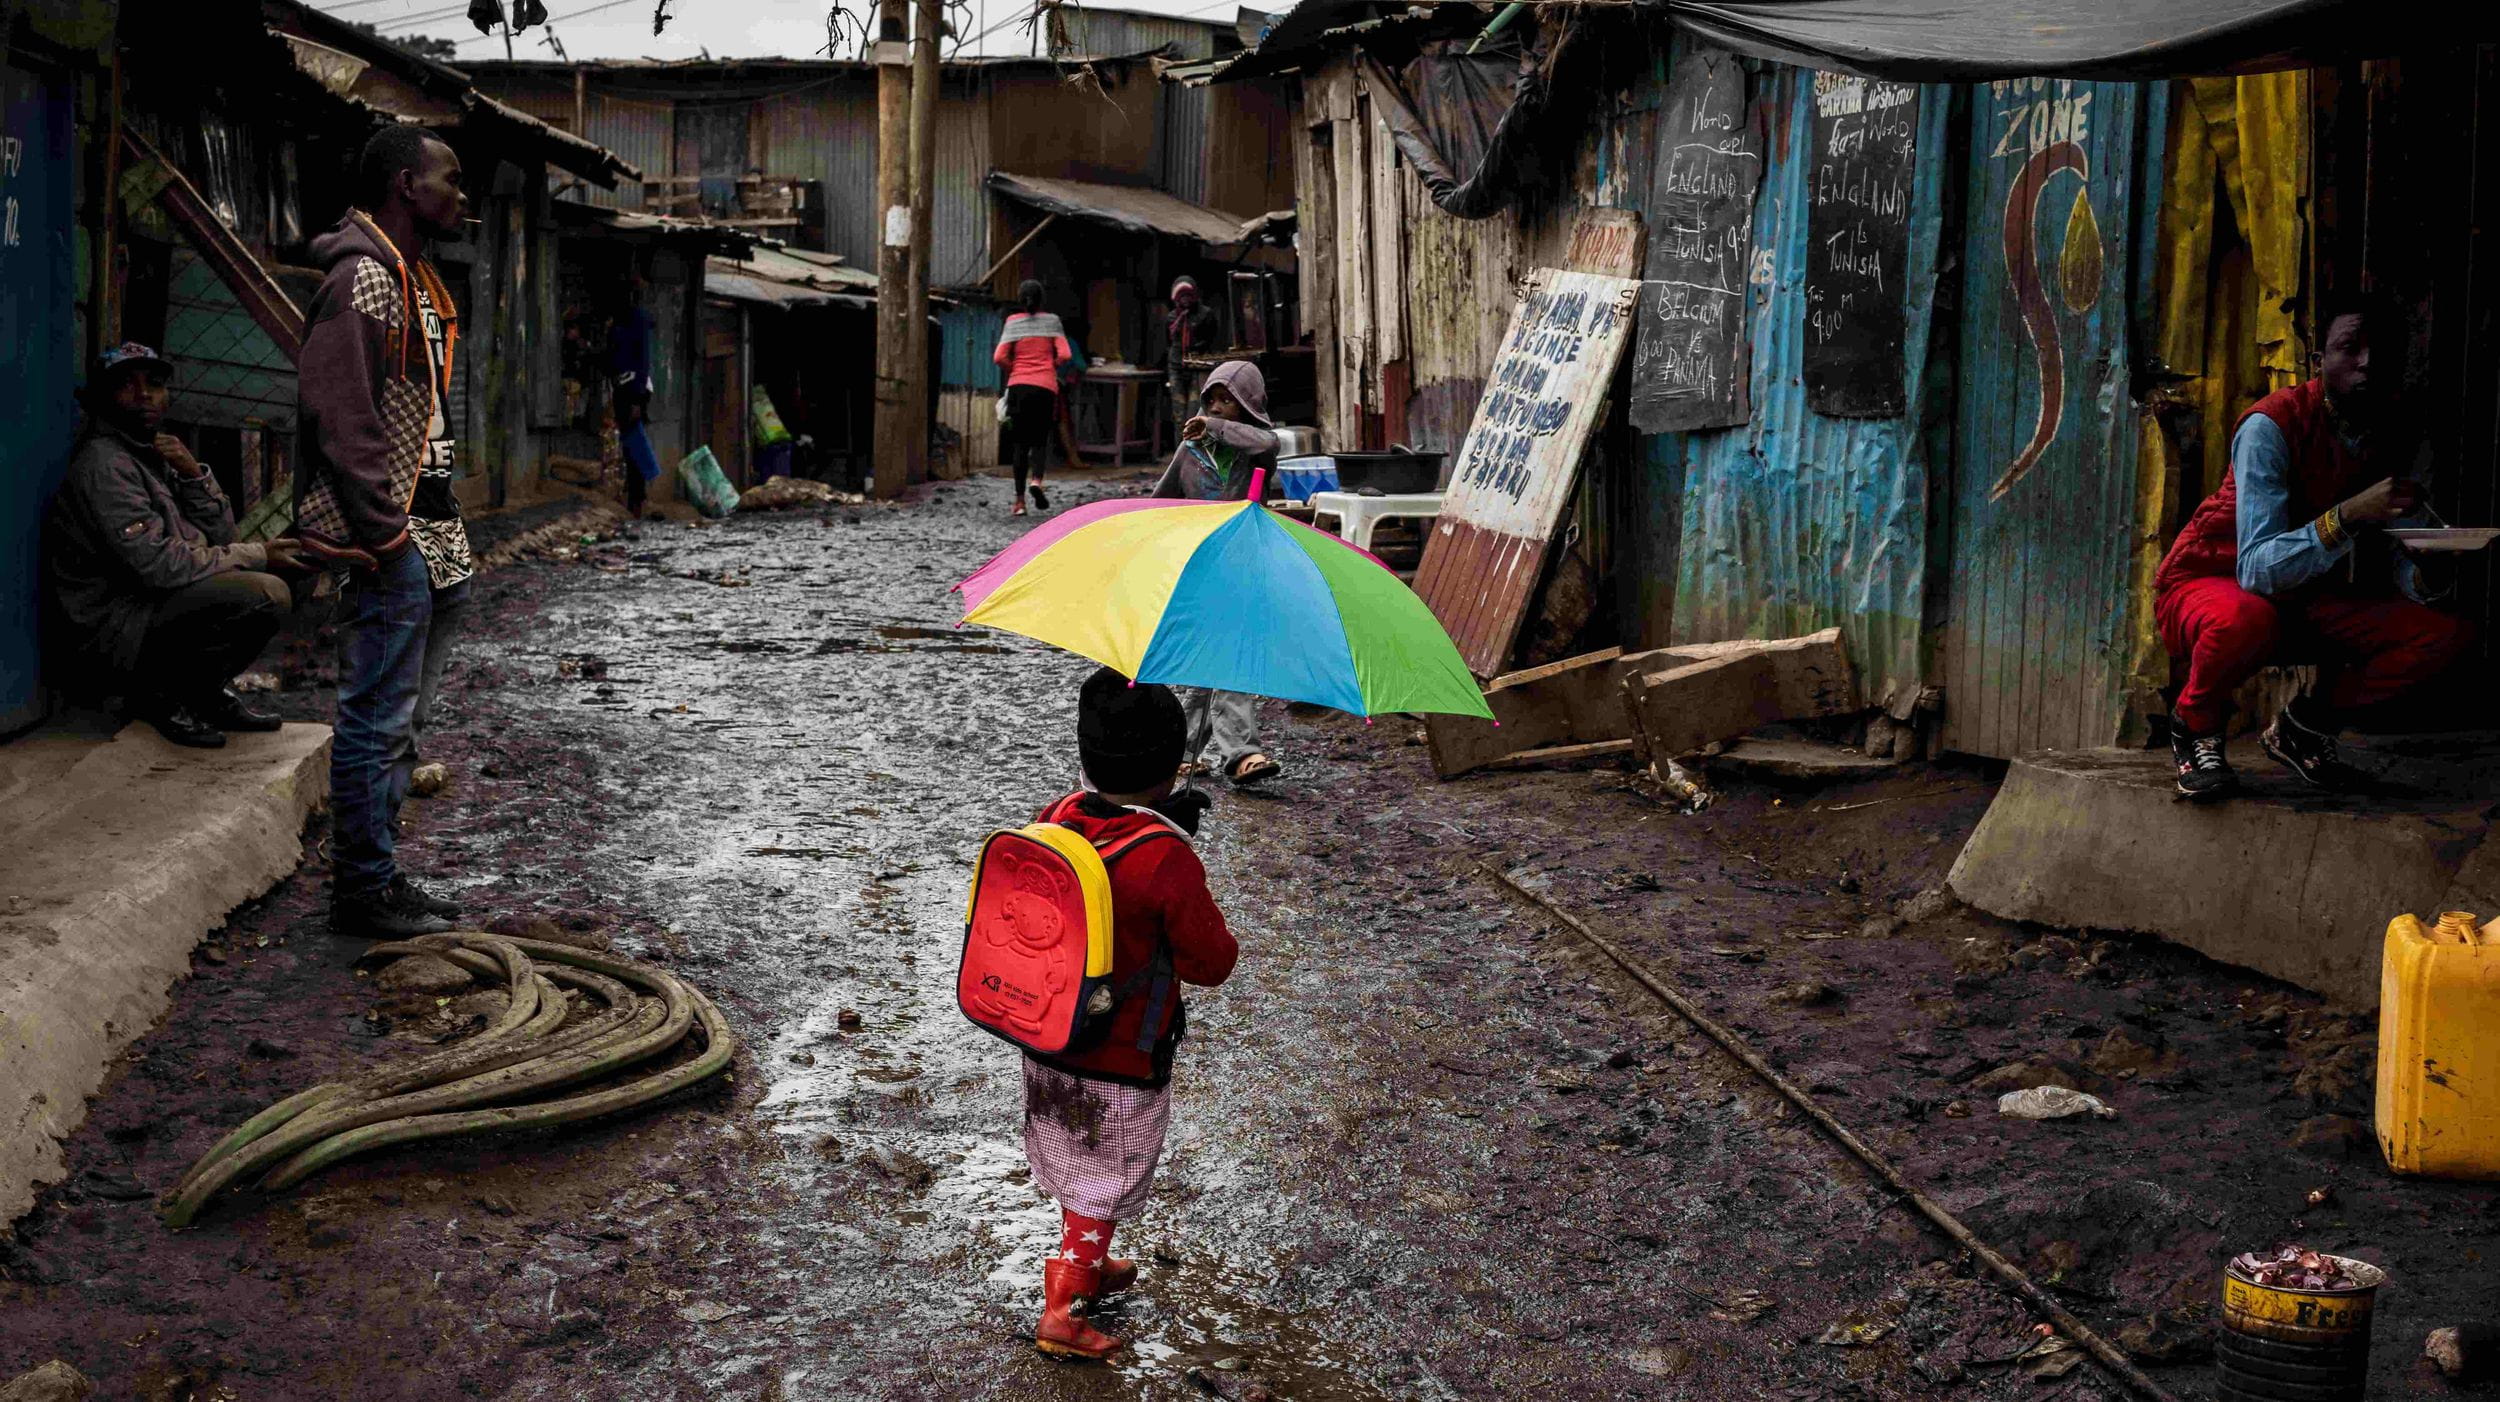 Ein Mädchen läuft mit einem bunten Regenschirm durch eine schlammige Straße in einem Slum in Nairobi. (Quelle: Lars Heidrich)